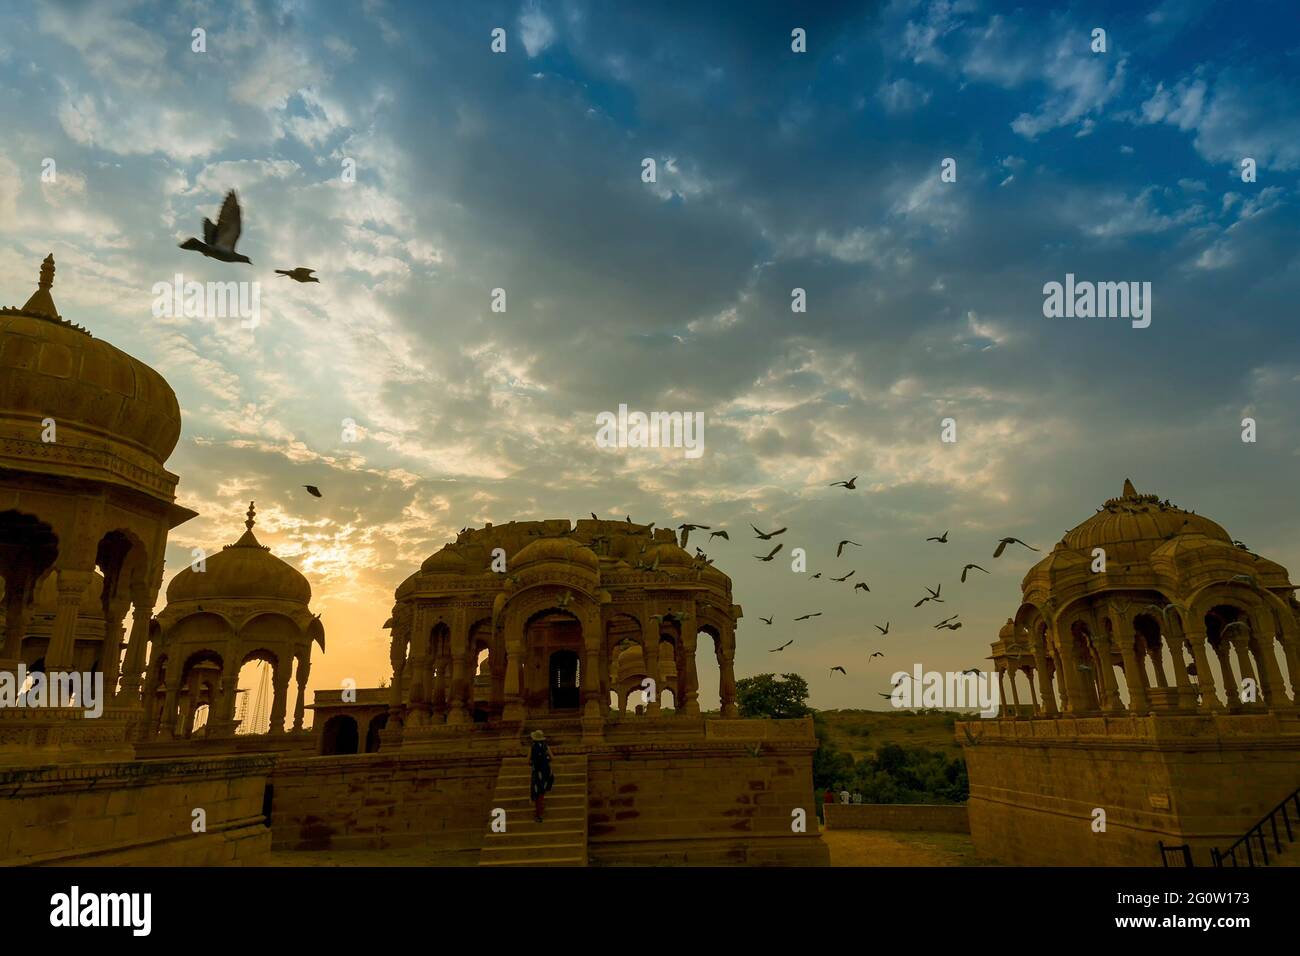 Silueta de Bada Bagh o Barabagh, significa Jardín Grande, es un complejo de jardines en Jaisalmer, Rajasthan, India, para los cenotafos reales de Maharajas significa Rey Foto de stock